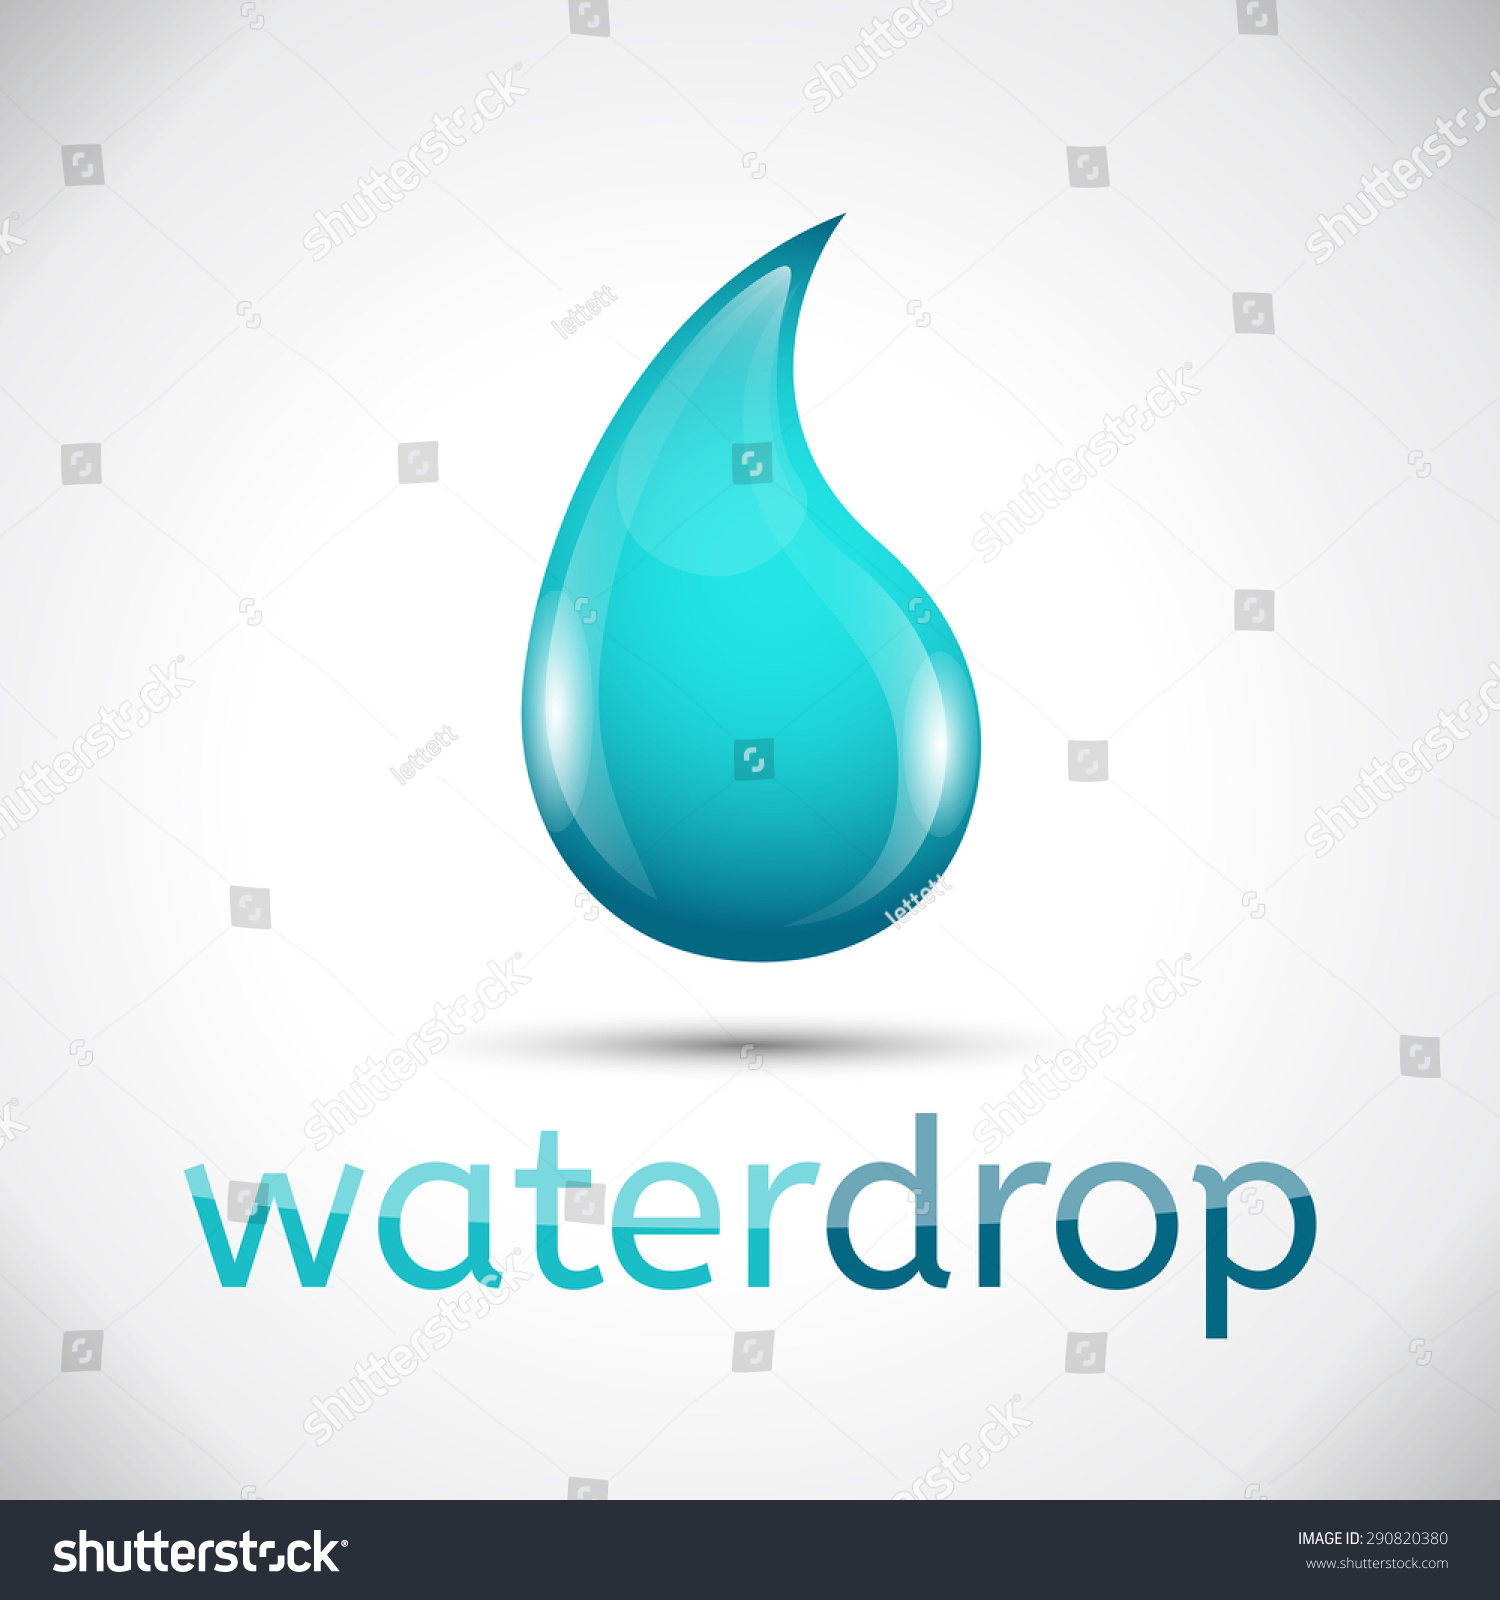 Water Dropvector Eps10 Stock Vector 290820380 - Shutterstock